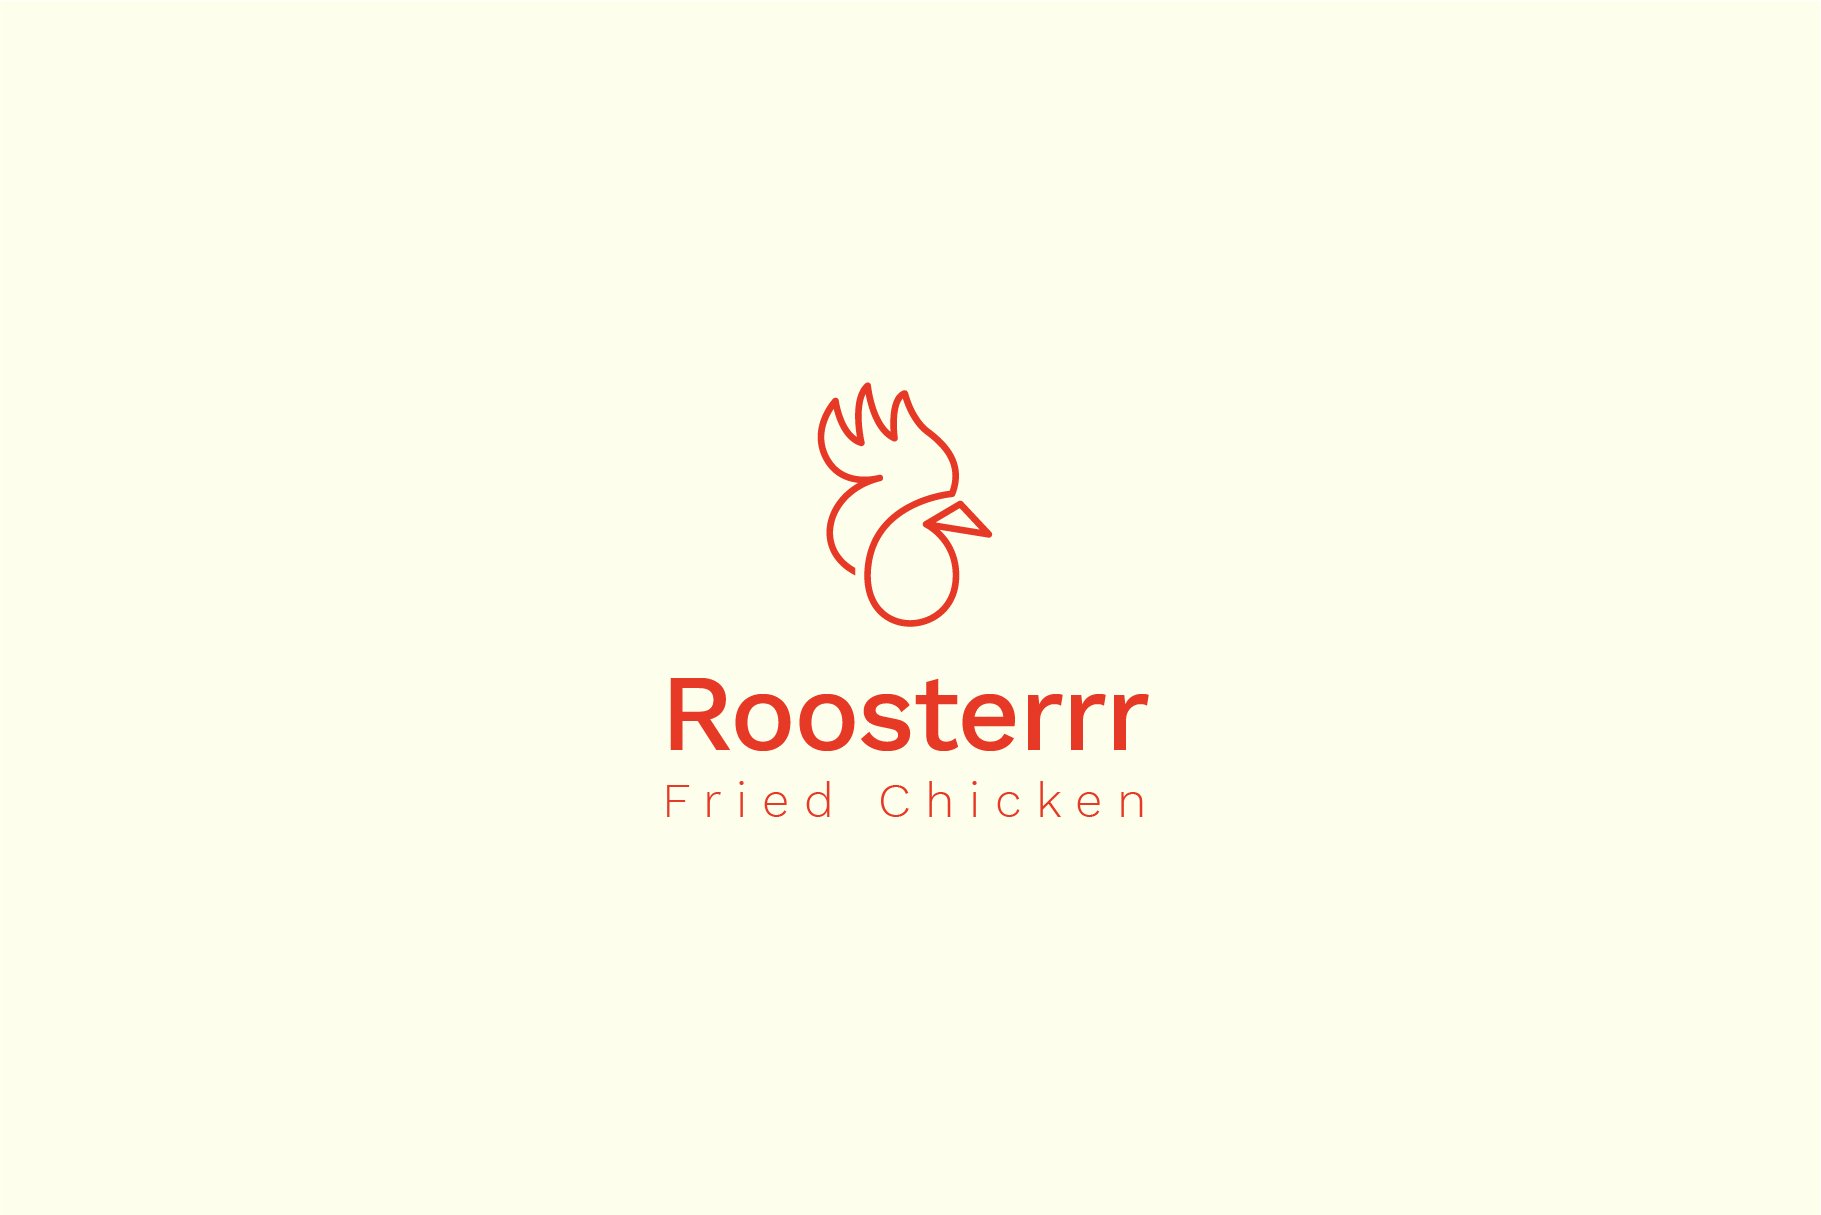 roosterrr logo artboard 6 109